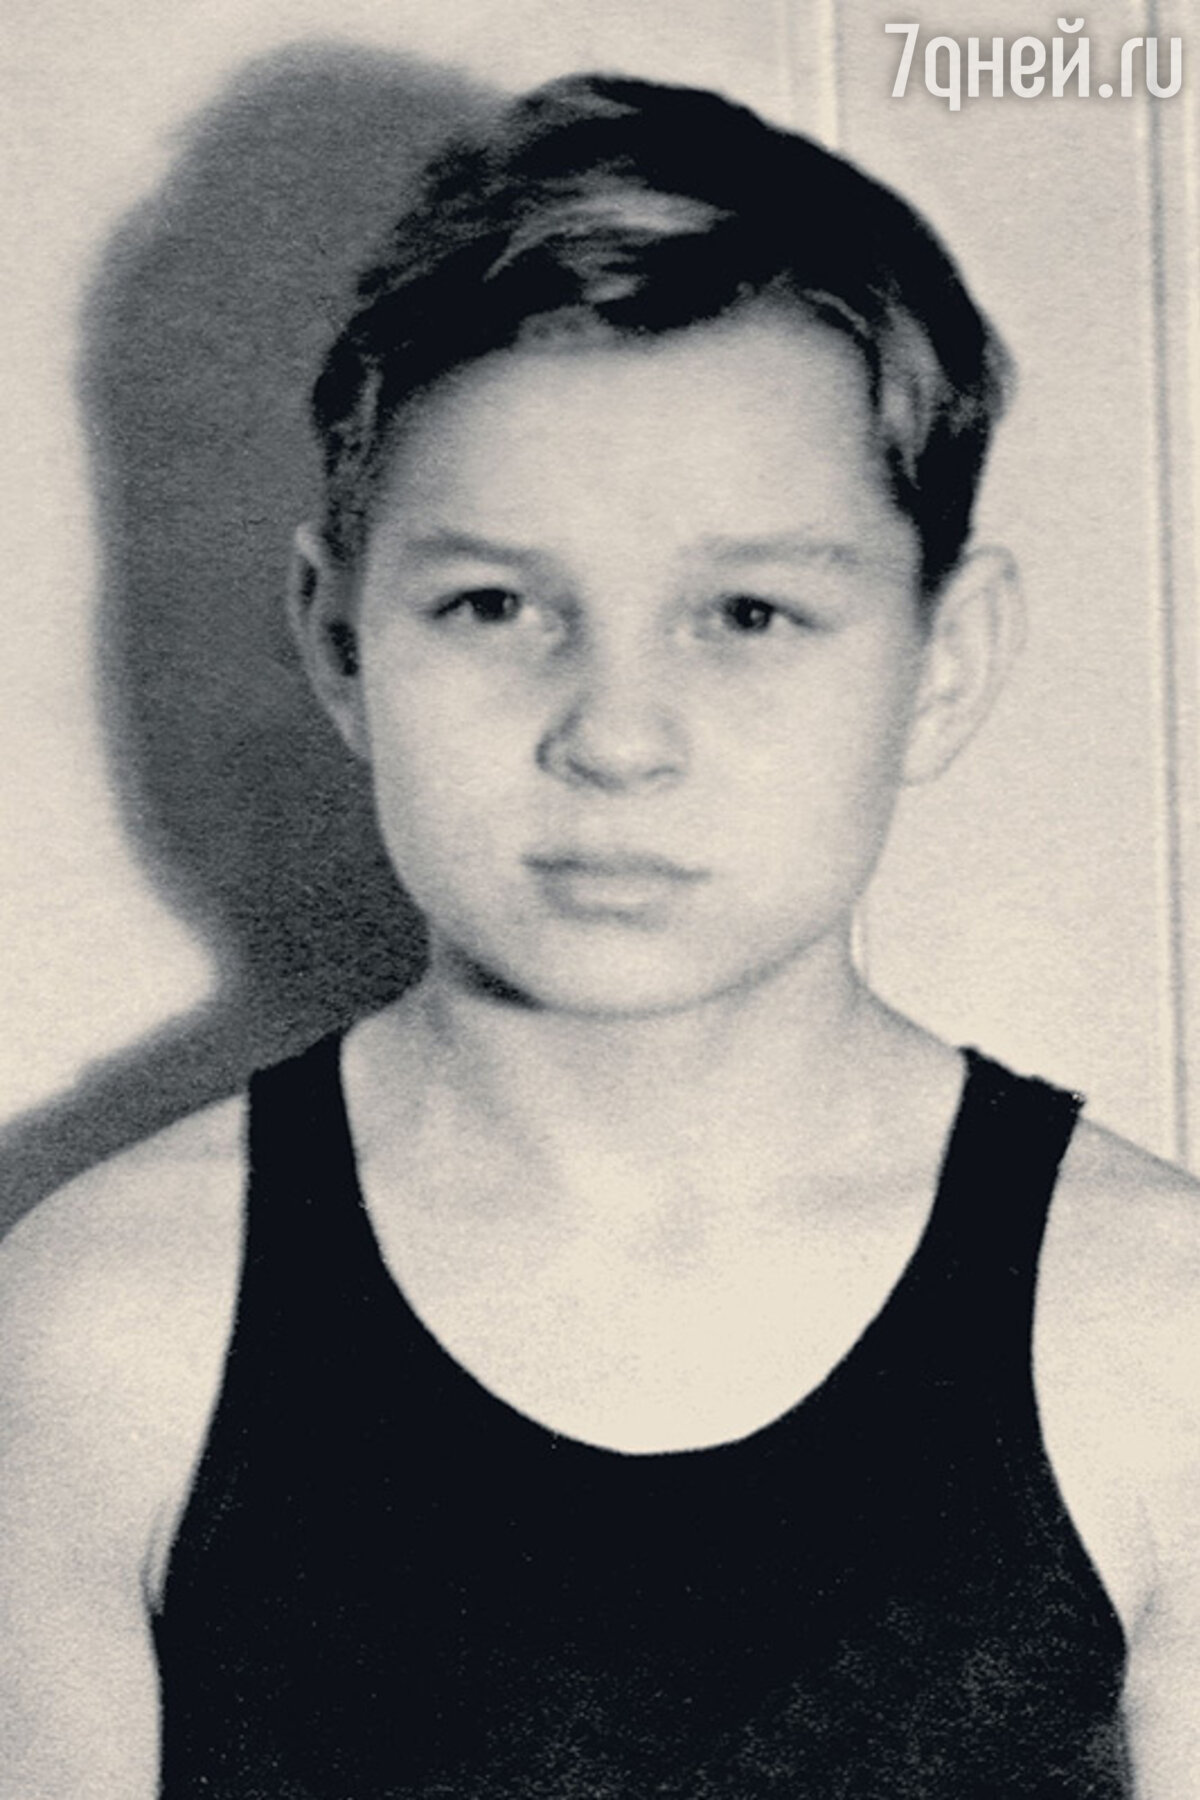 Стефанович в молодости фото